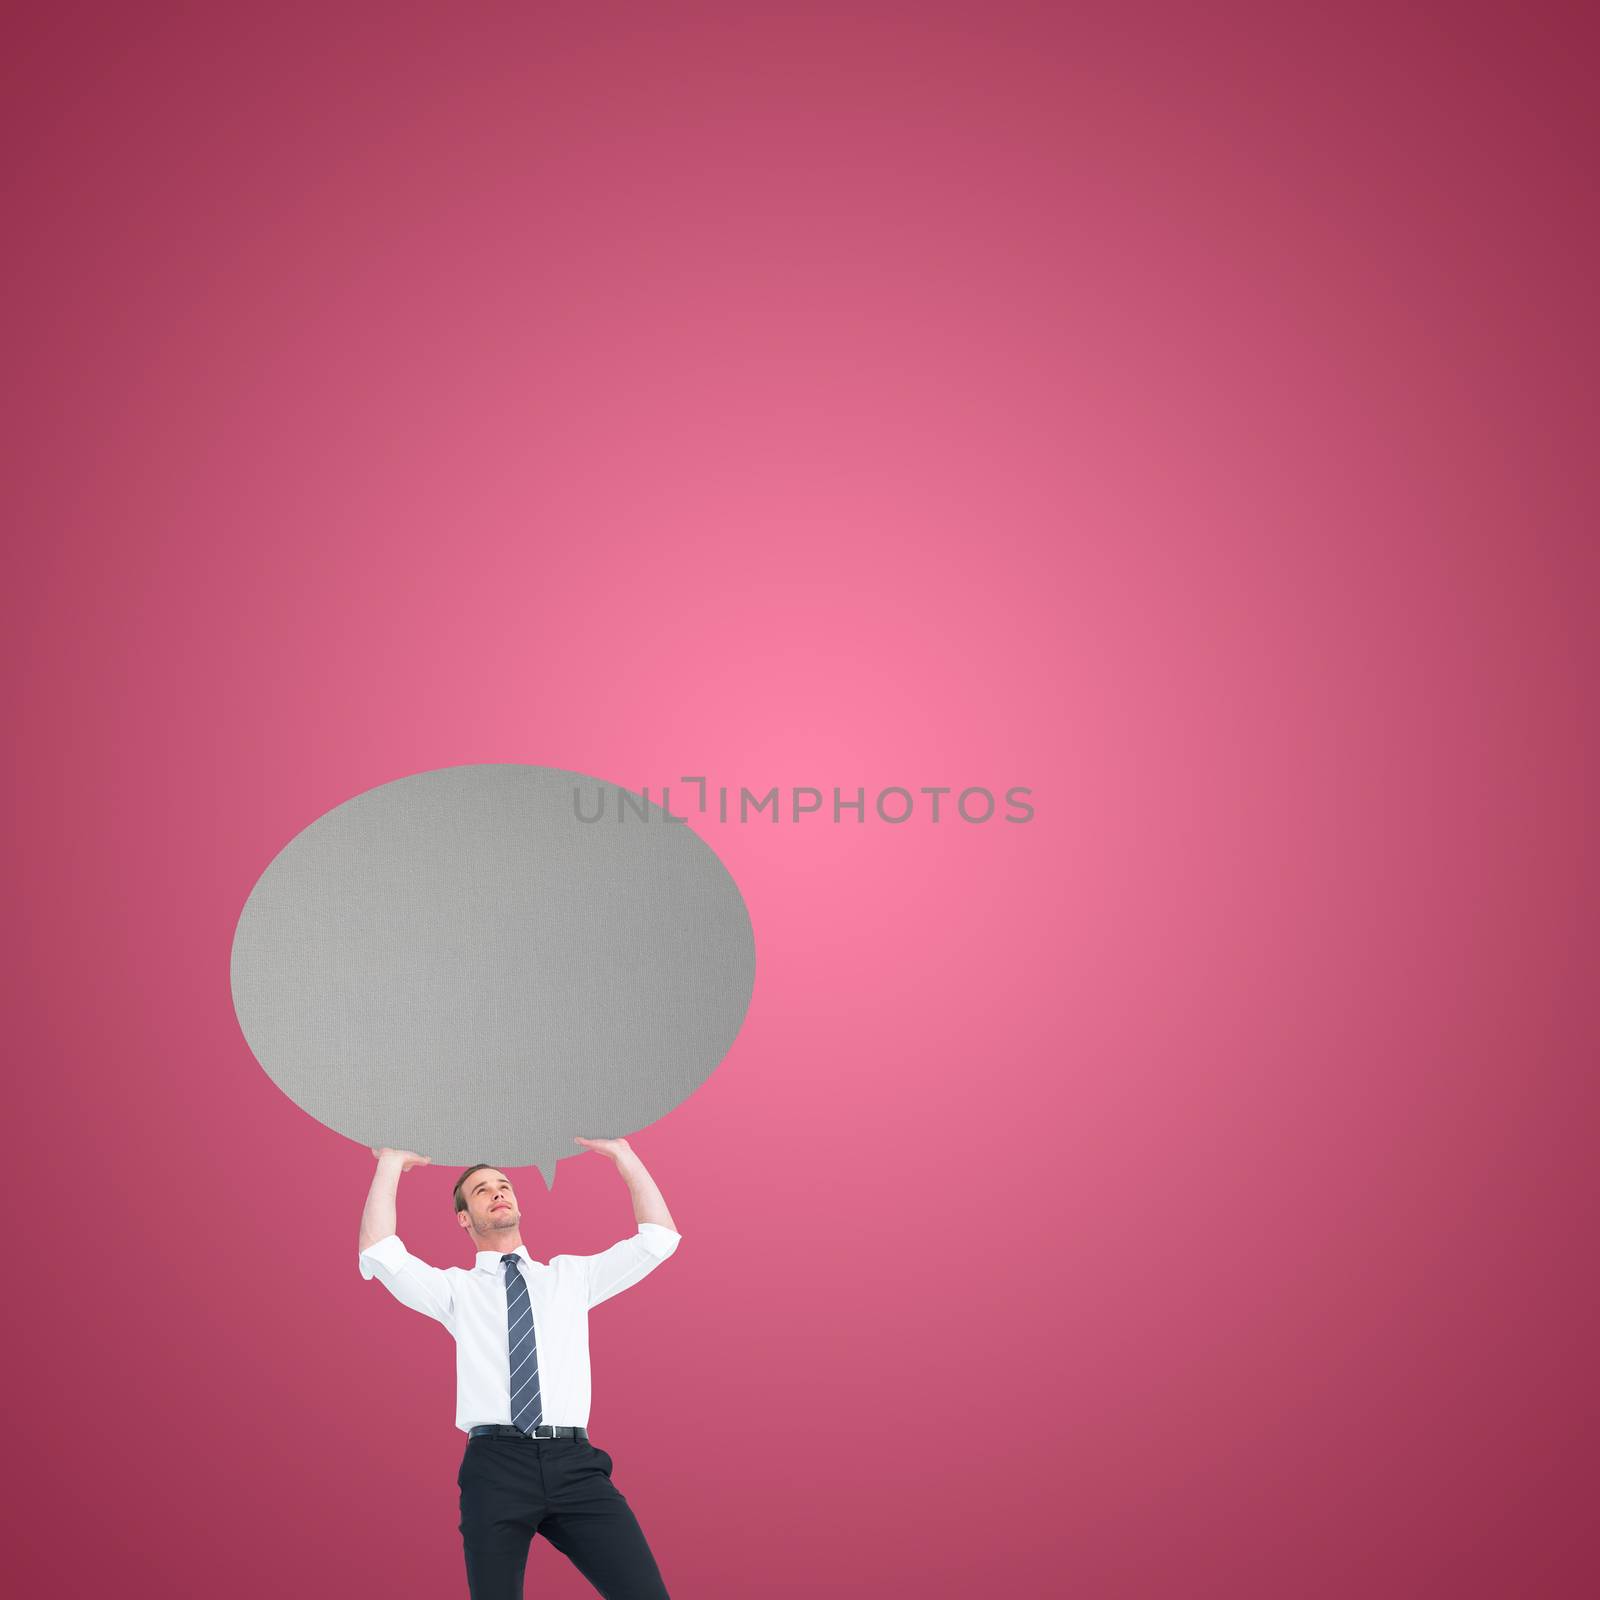 Businessman holding a speech bubble against red vignette